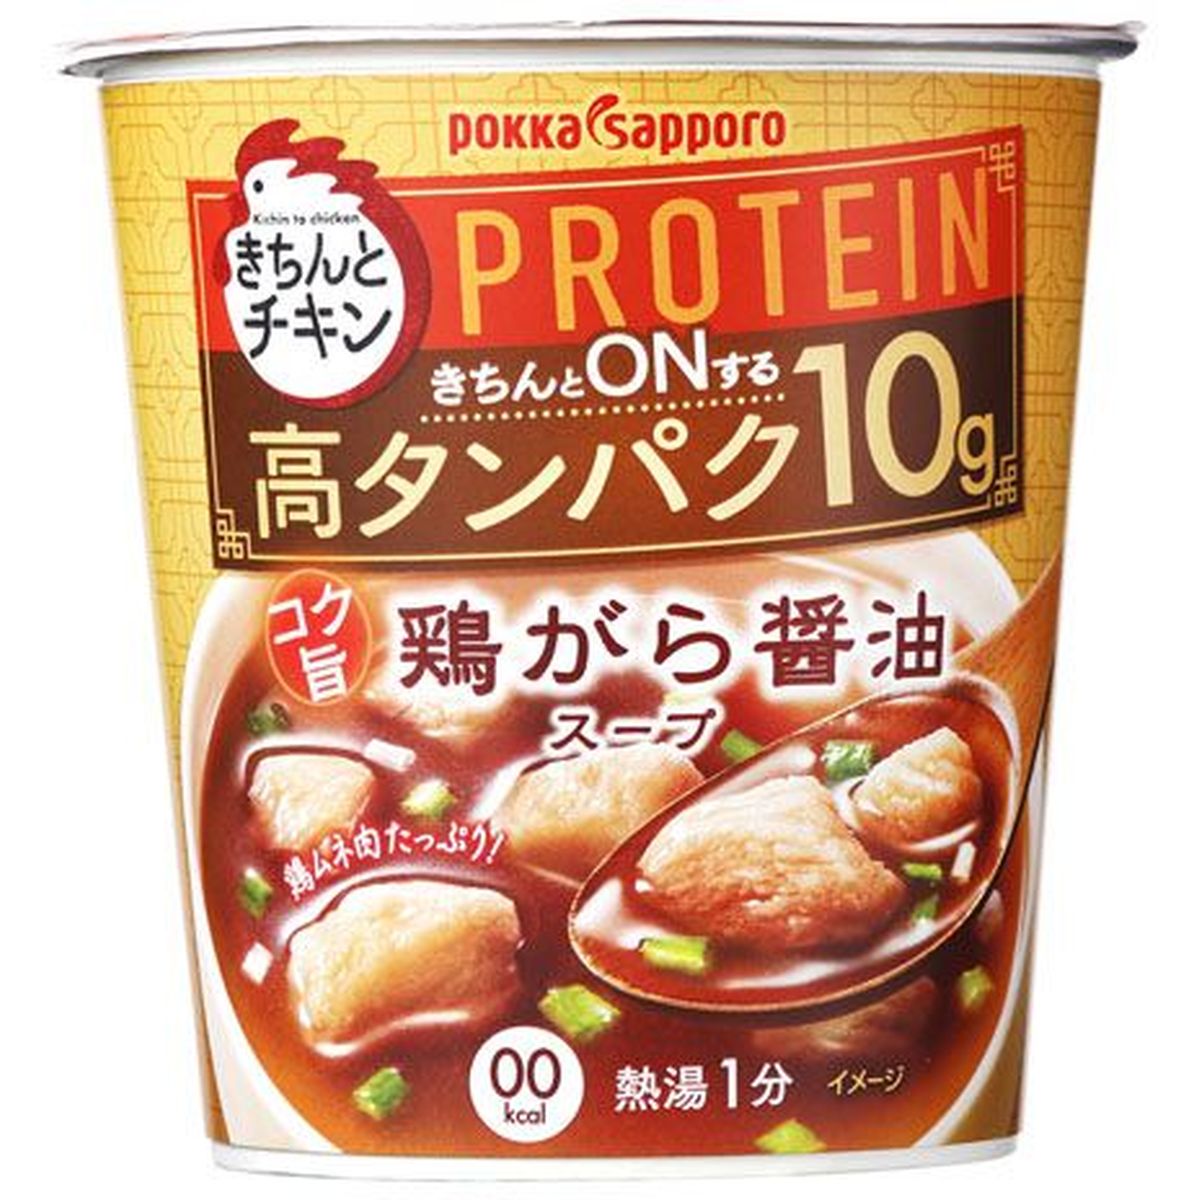 【6個入リ】ポッカサッポロ キチントチキン 鶏ガラ醤油スープ 19.5g